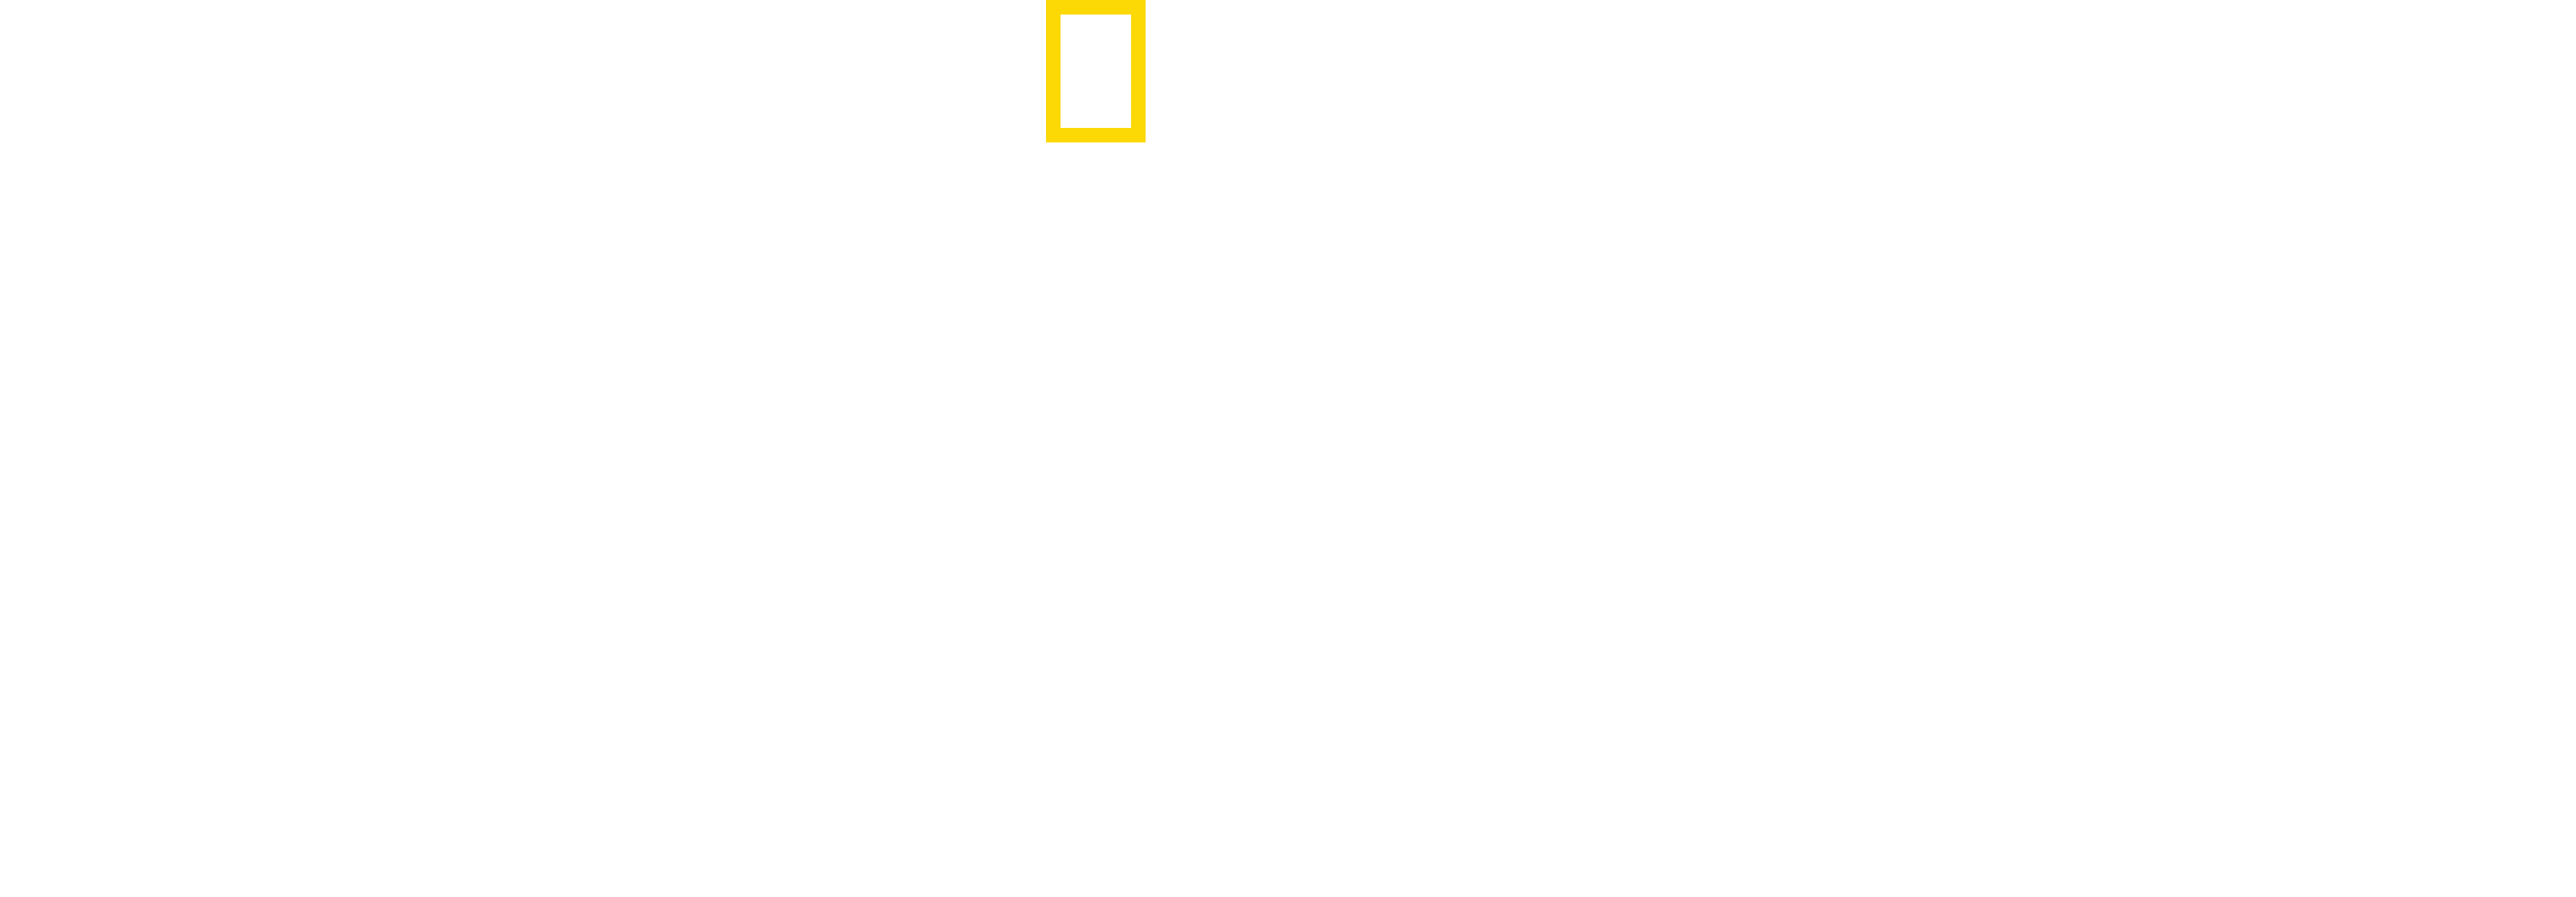 Patagonia Wings logo